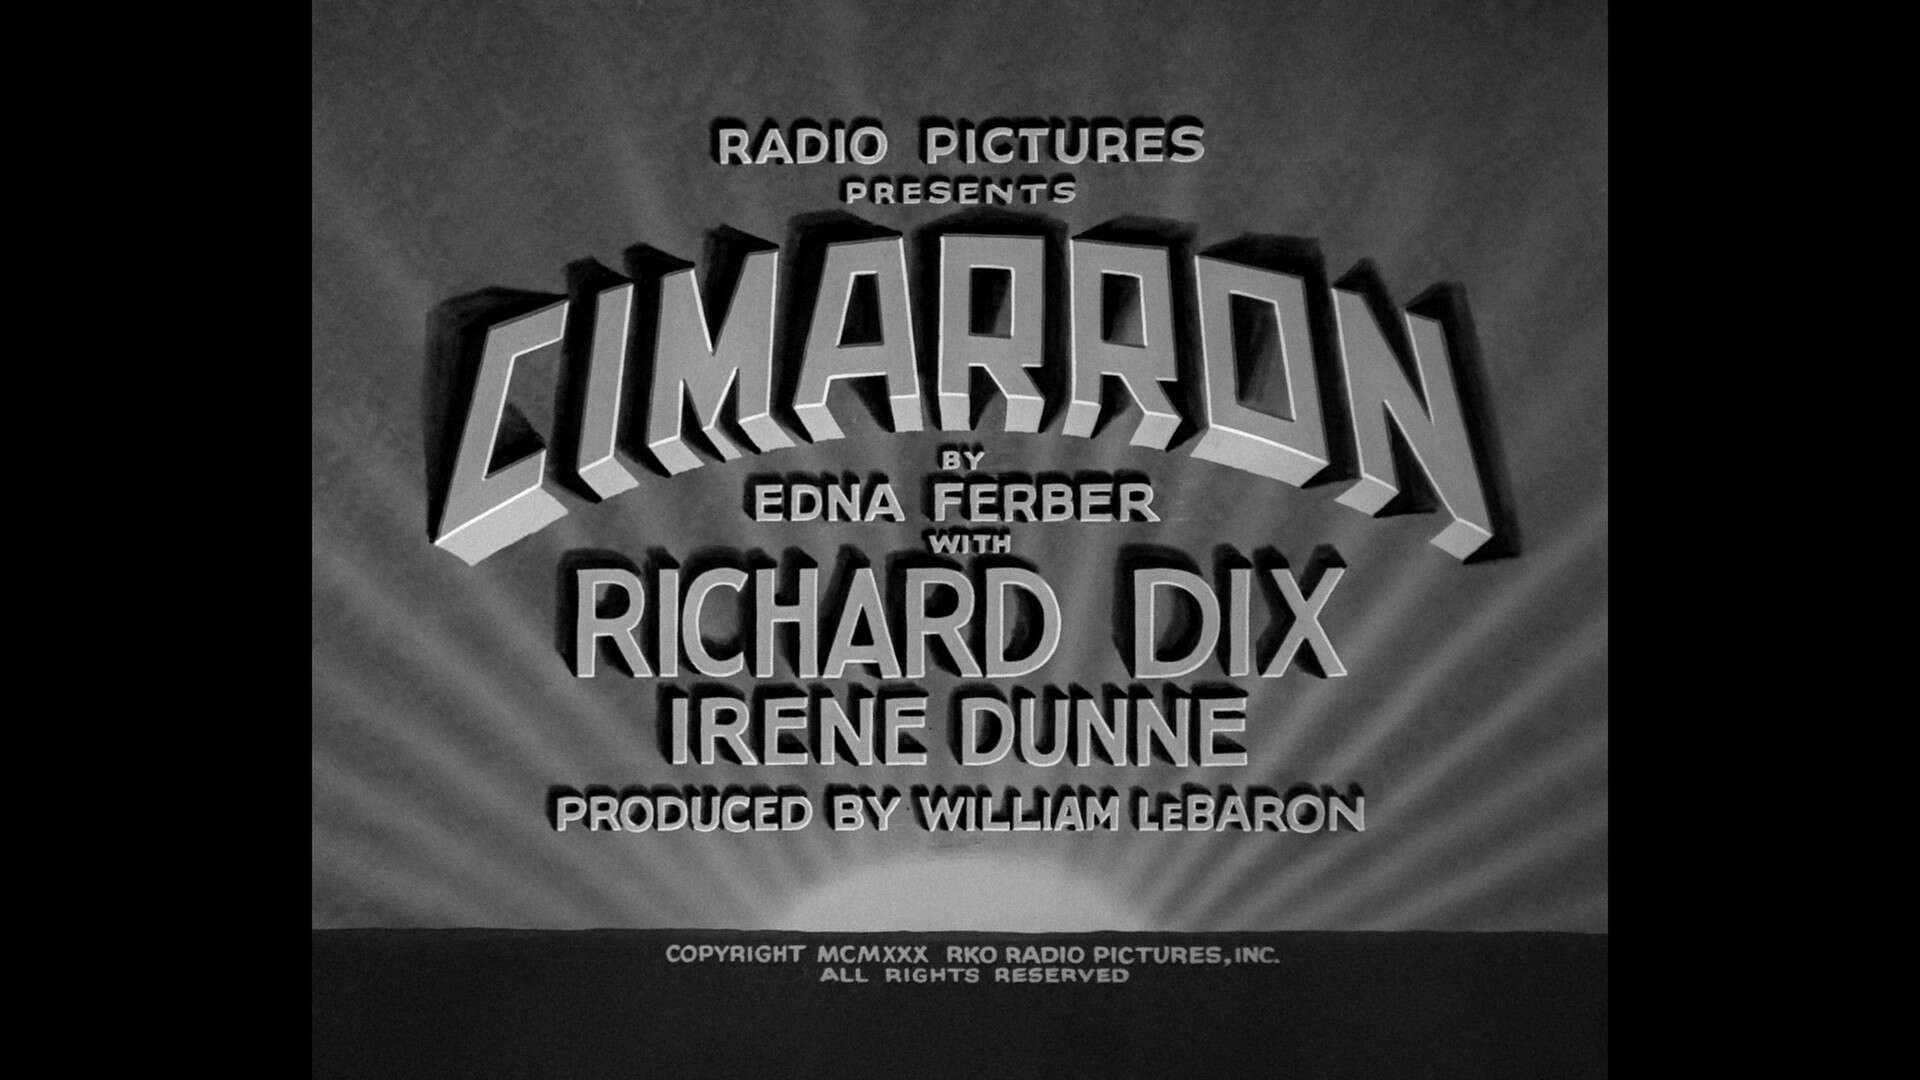 cimarron 1931 warner archive bluray (1)